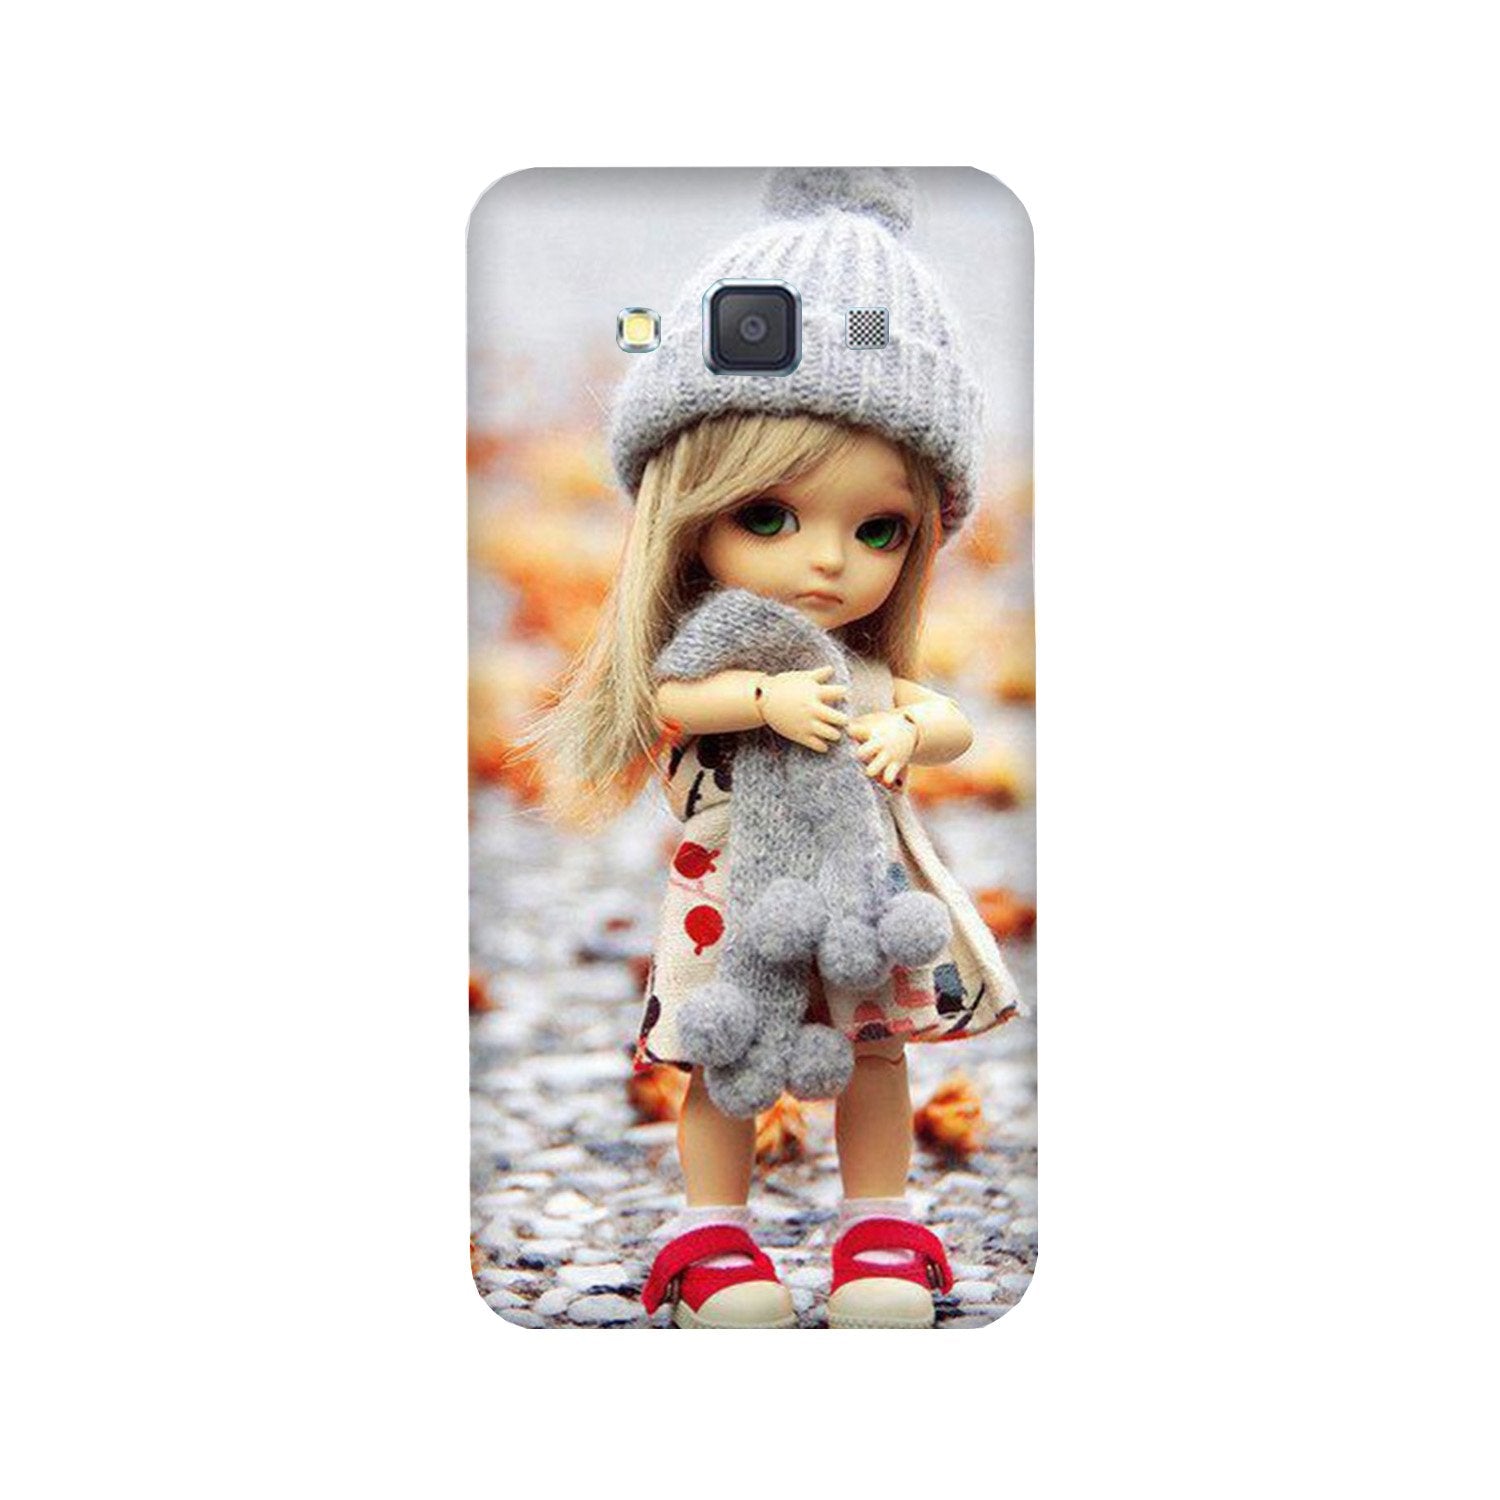 Cute Doll Case for Galaxy J5 (2016)